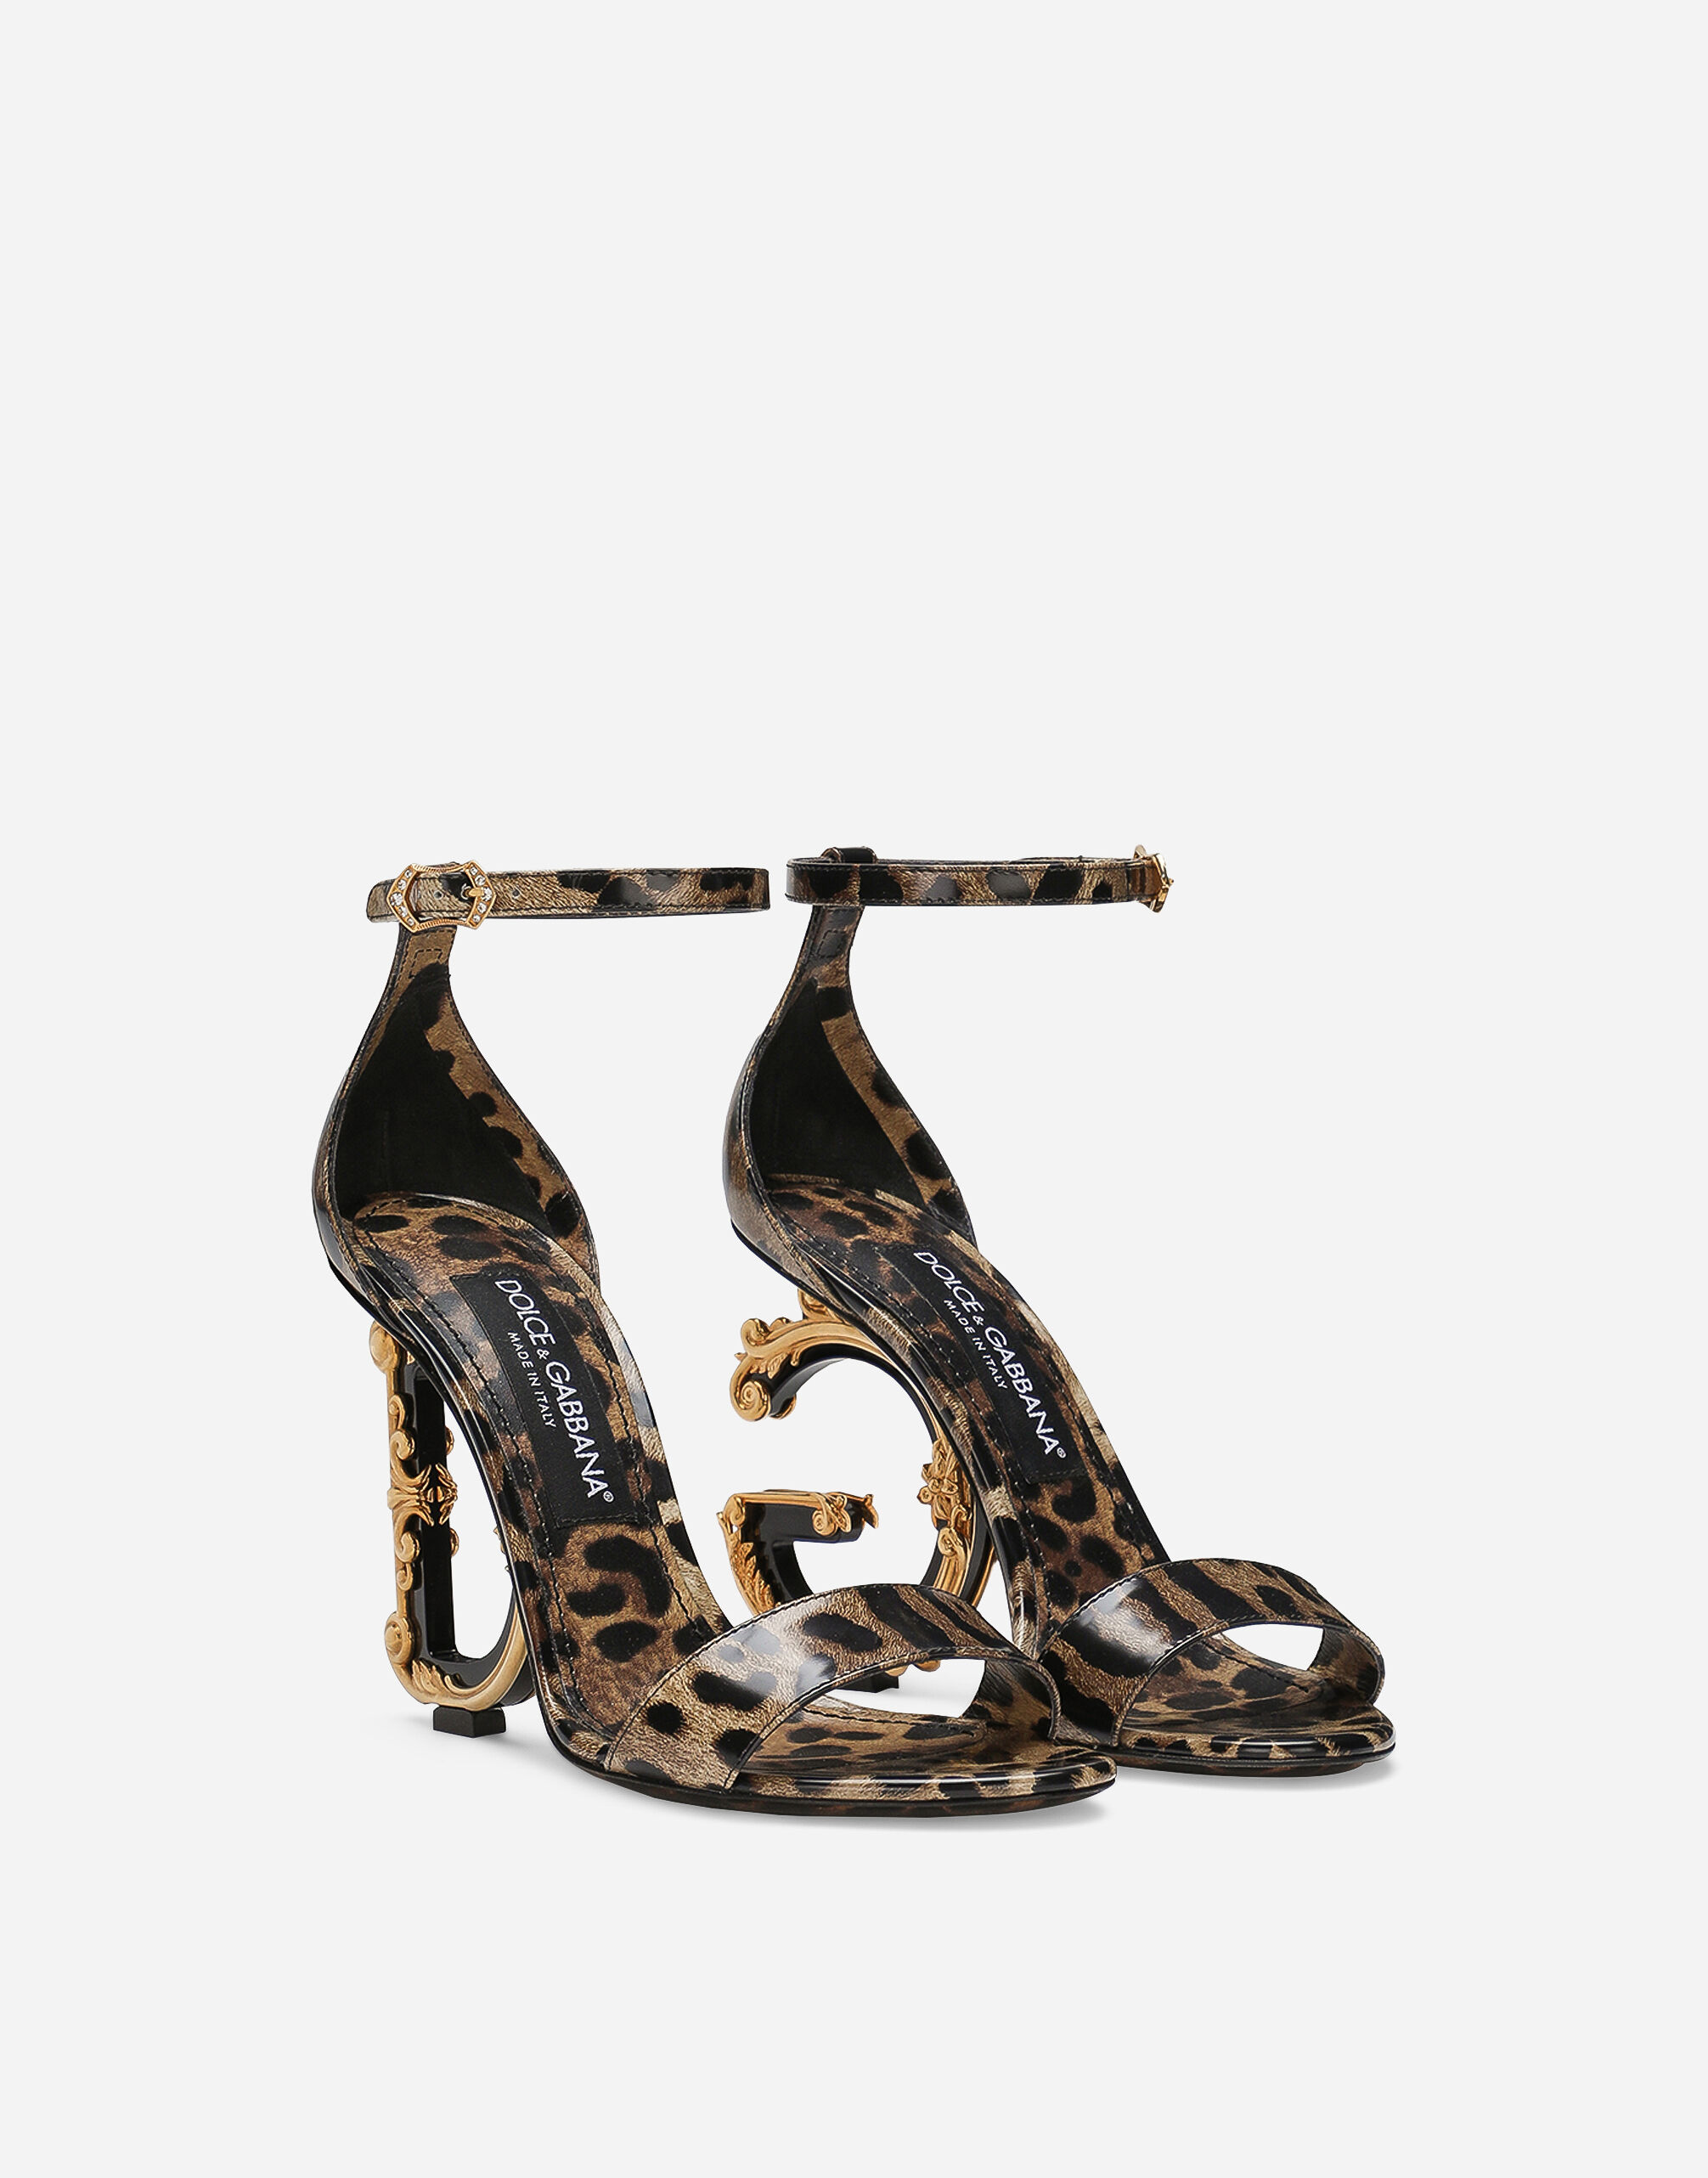 New Look Size 4 Sandal Women Block Heel Leopard Print Wide Fit Brown  Strappy NEW | eBay